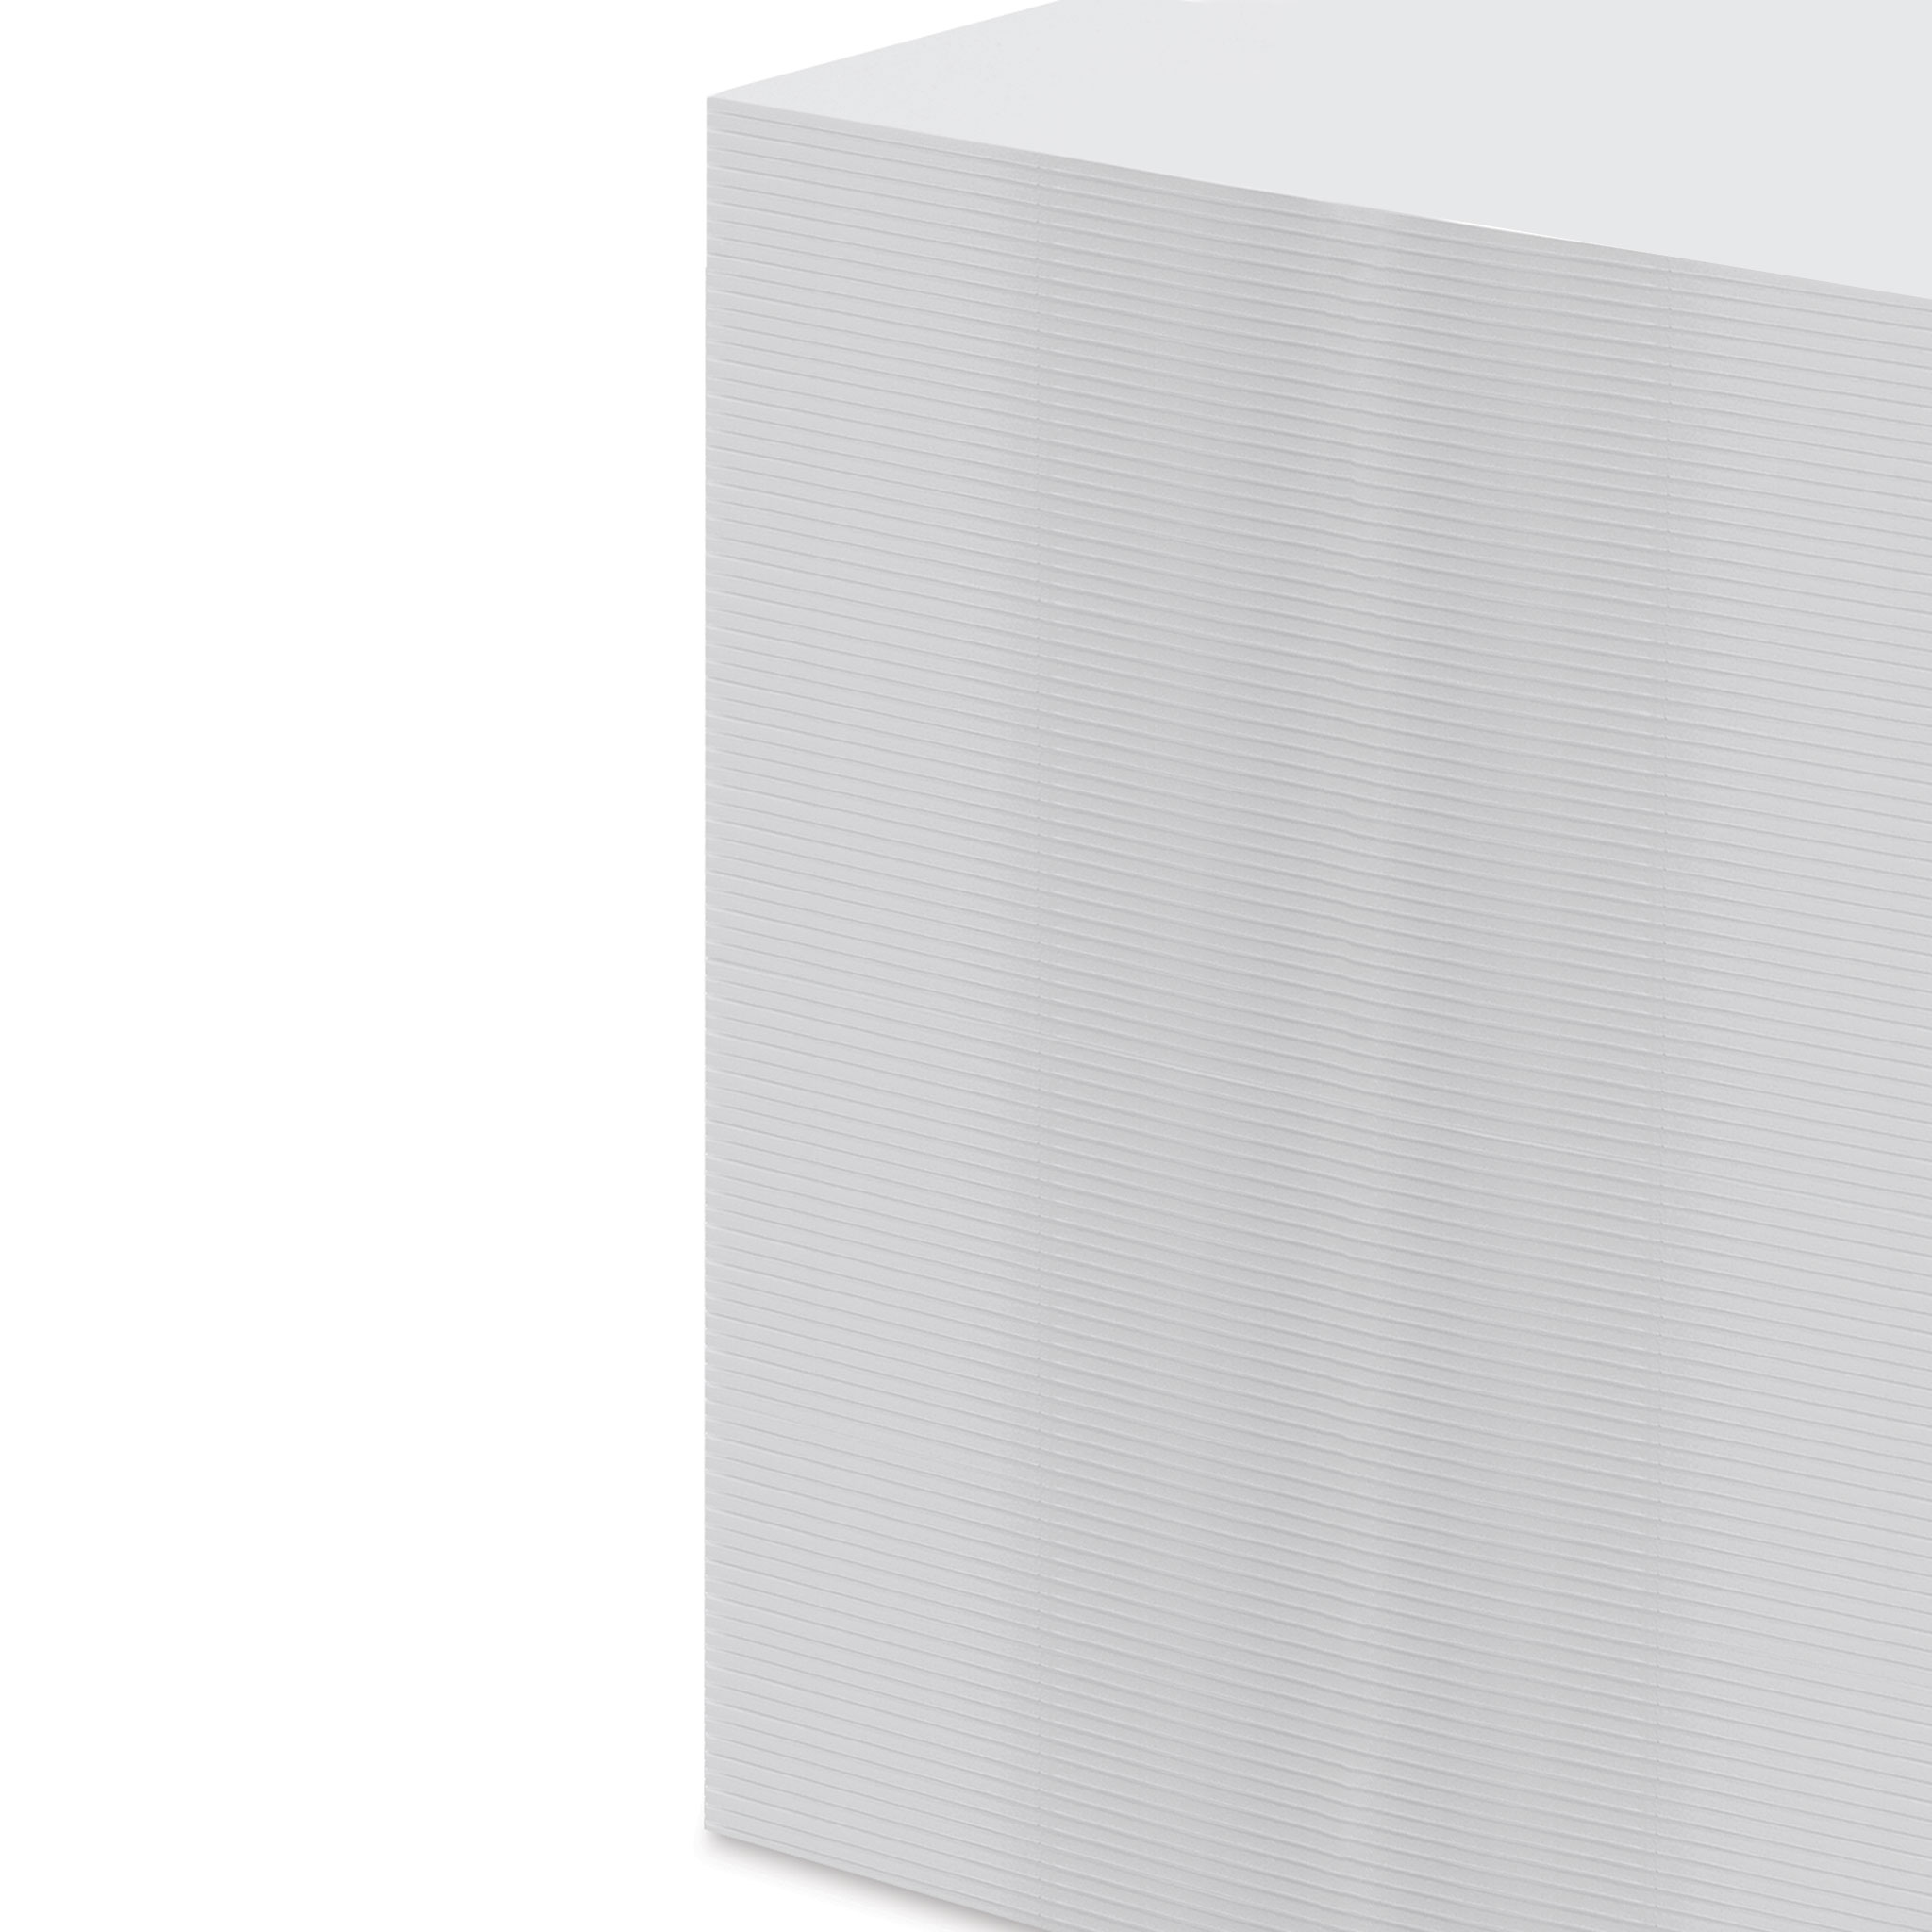 White Foam Board - 24 x 36 x 3/16, Pkg of 25